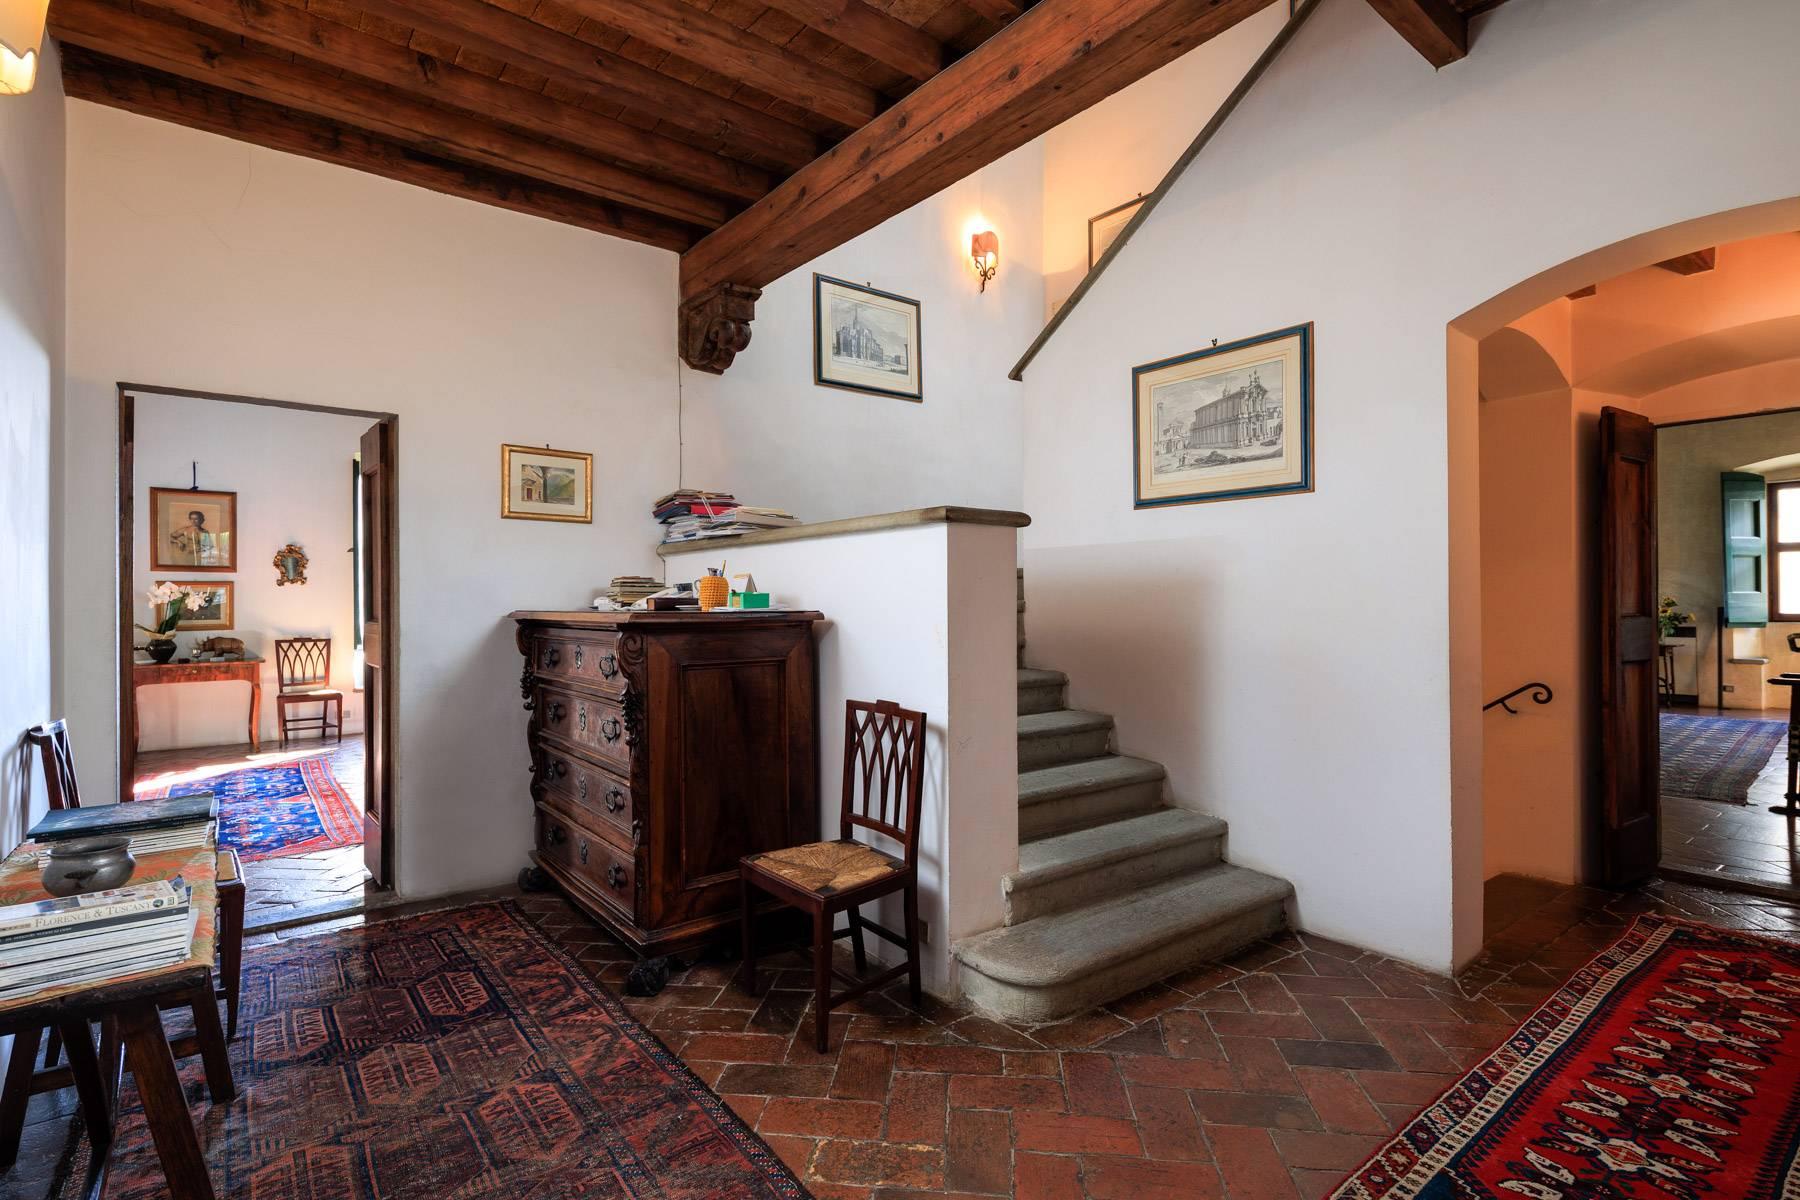 Grande villa padronale d'epoca nella più rinomata zona olearia vicino a Firenze - 12